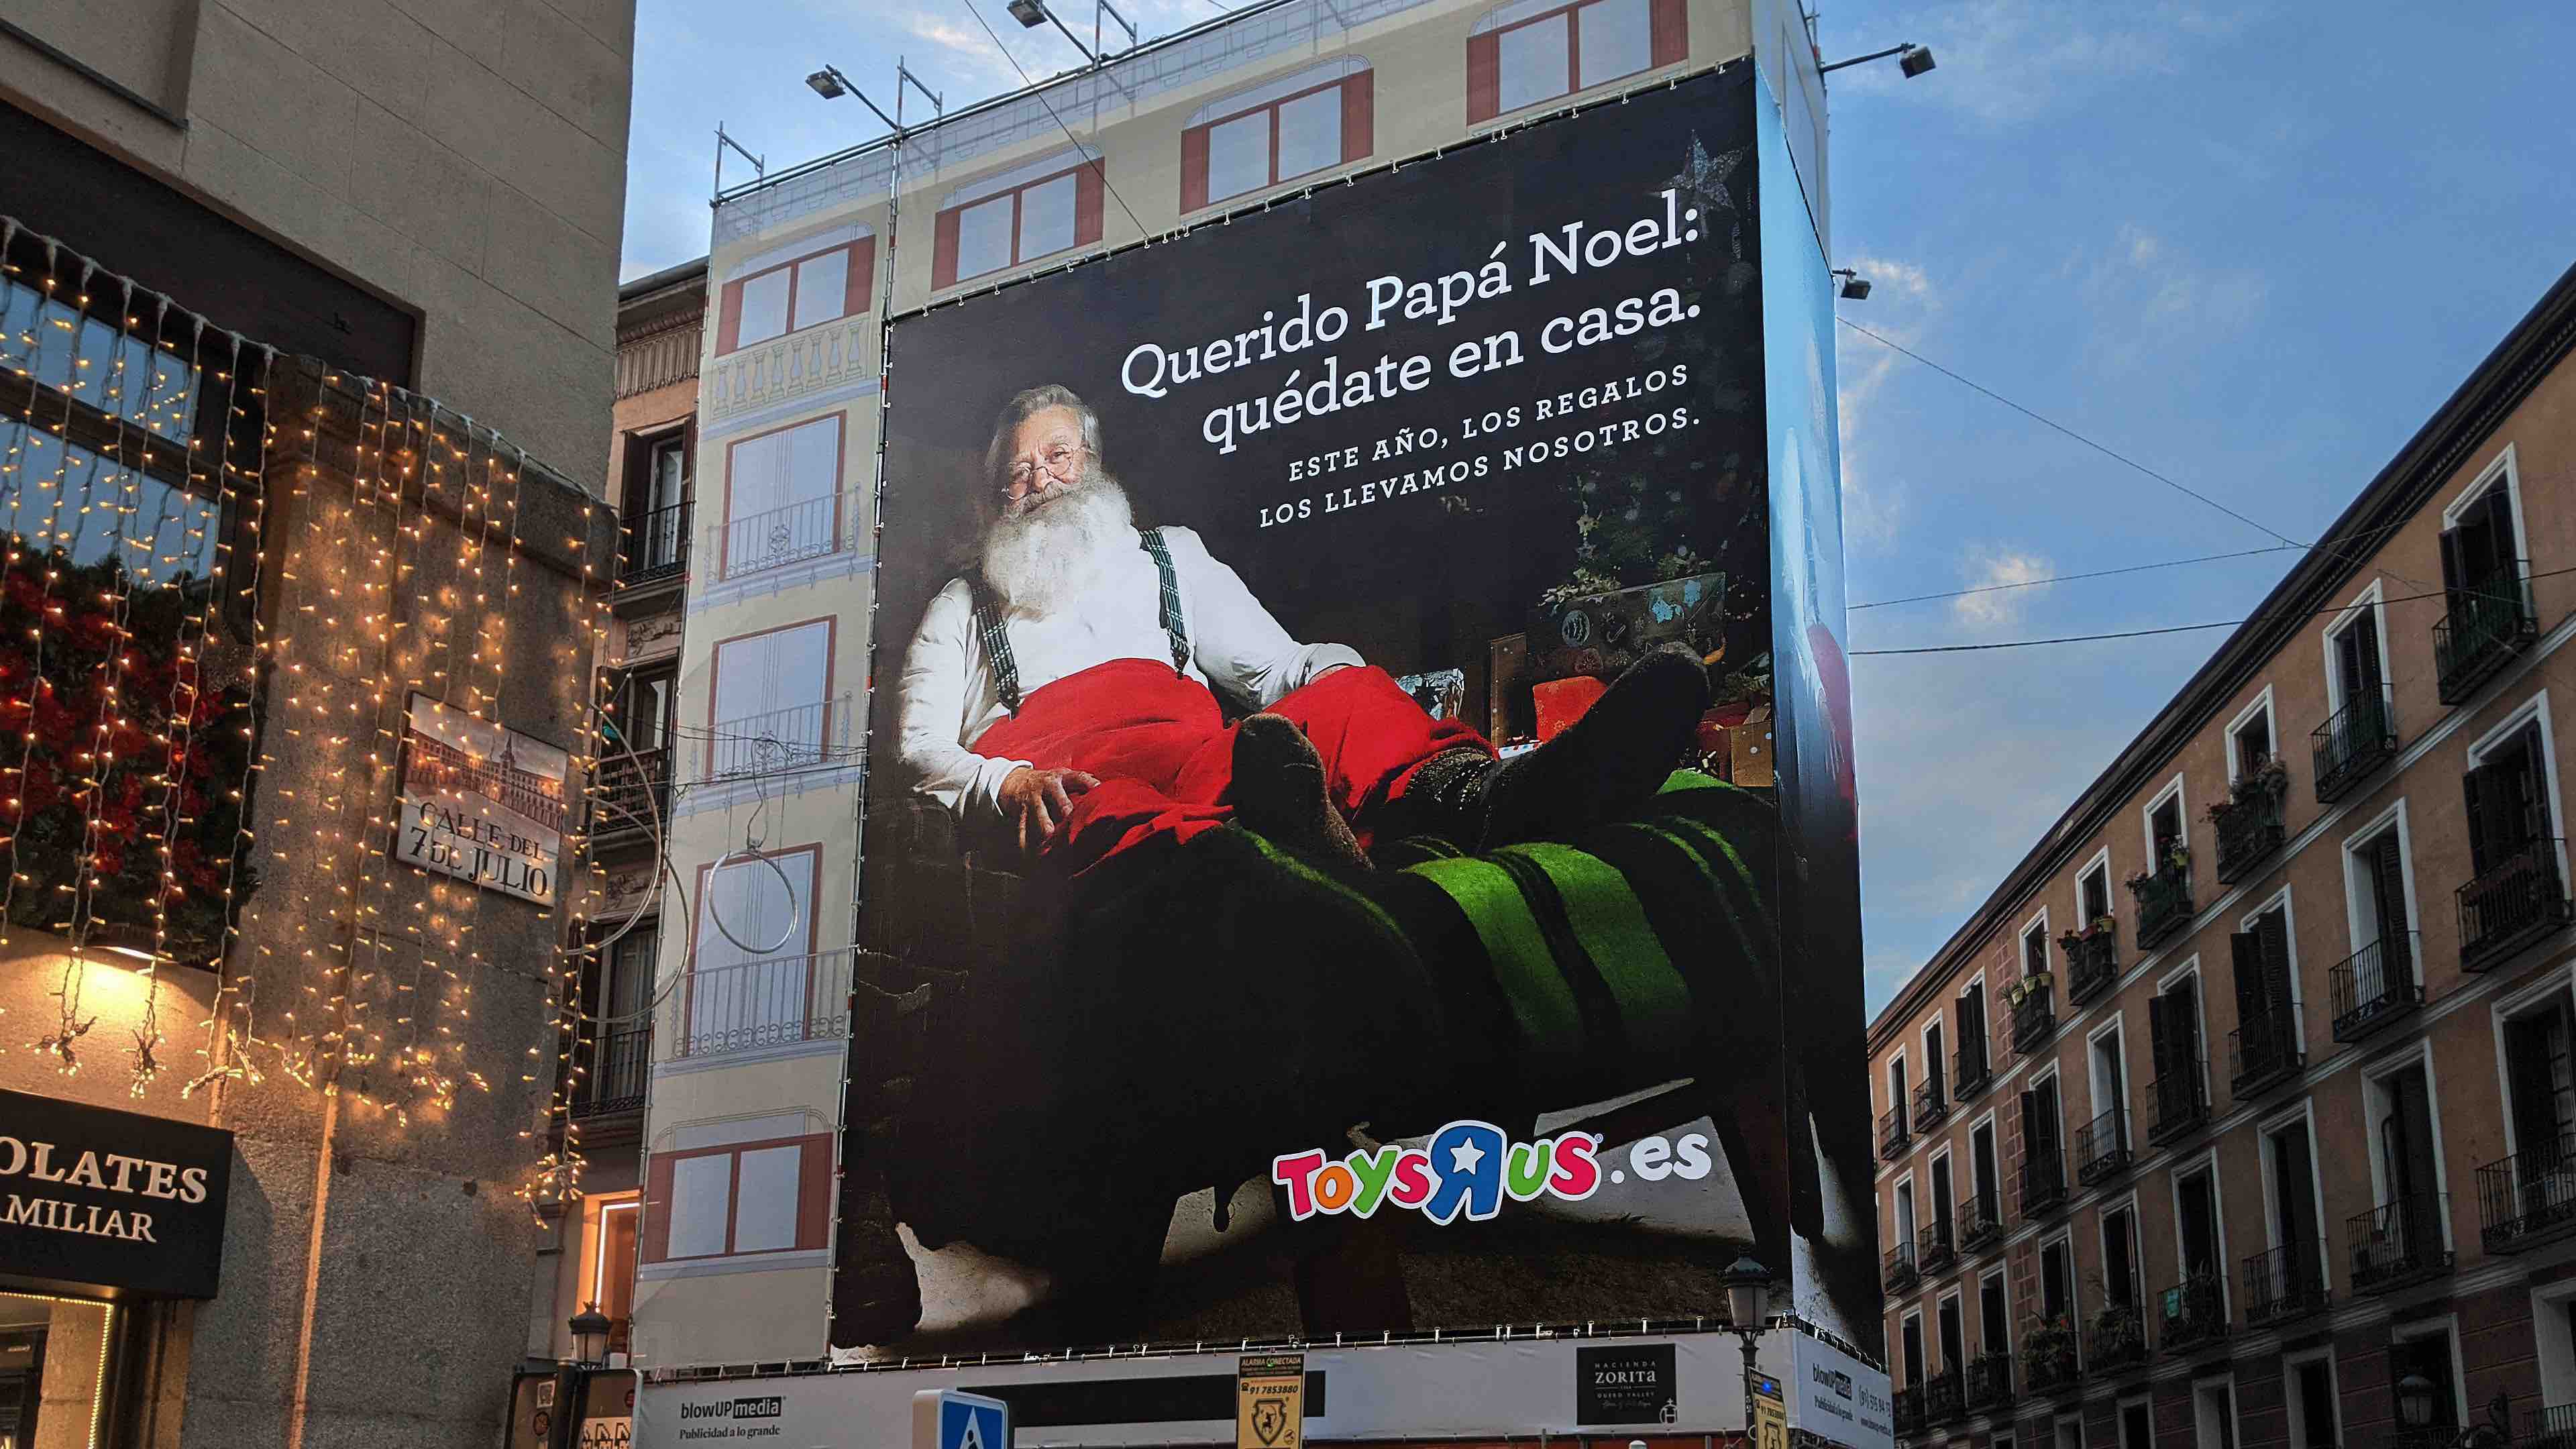 Lona gigante de Toy “R” Us en la Plaza Mayor de Madrid